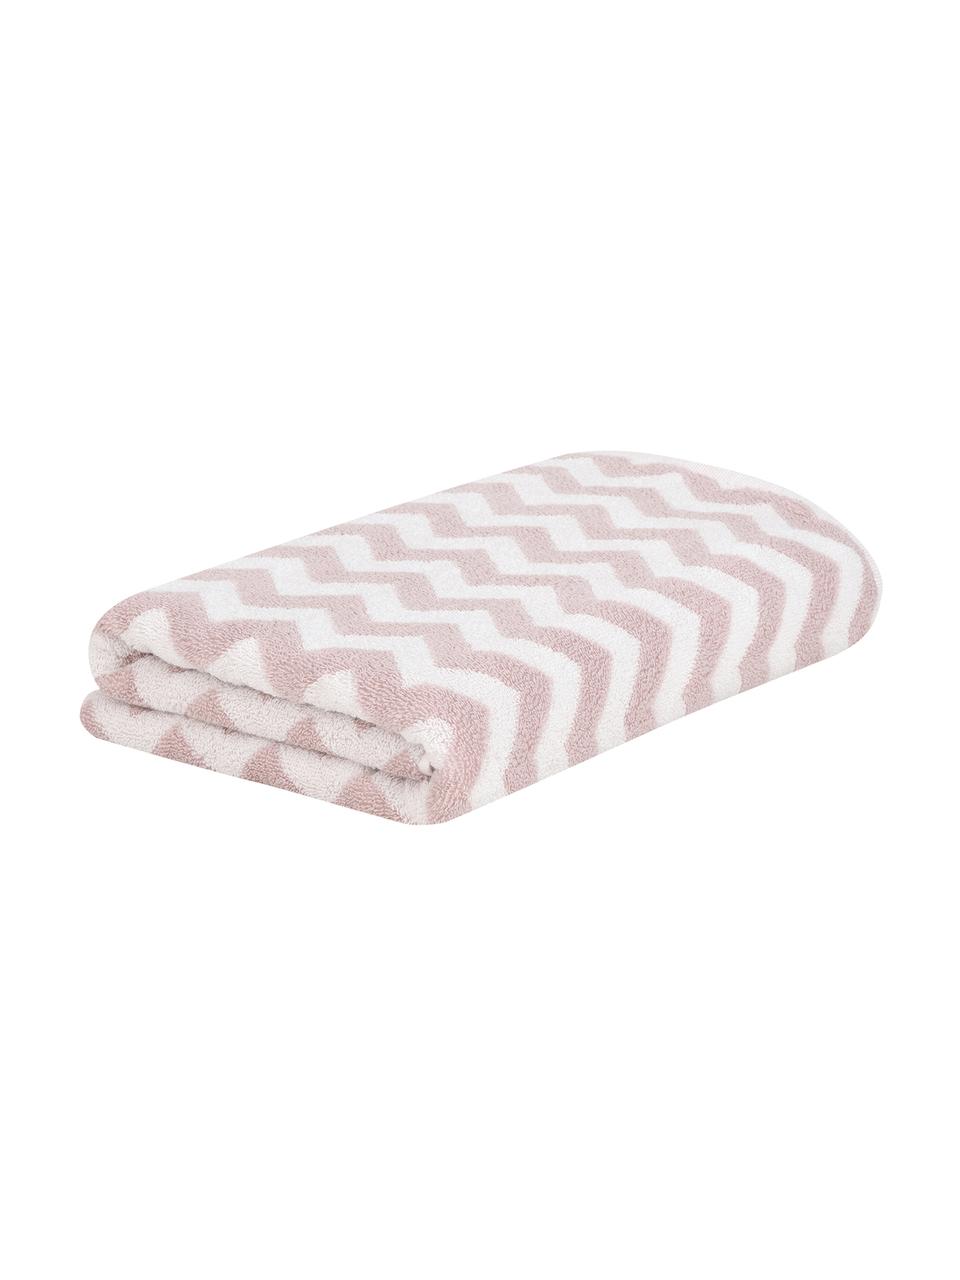 Serviette de toilette coton pur à imprimé zigzag Liv, 100 % coton, grammage intermédiaire 550 g/m², Rose, blanc crème, Serviettes invité, larg. 30 x long. 50 cm, 2 pièces